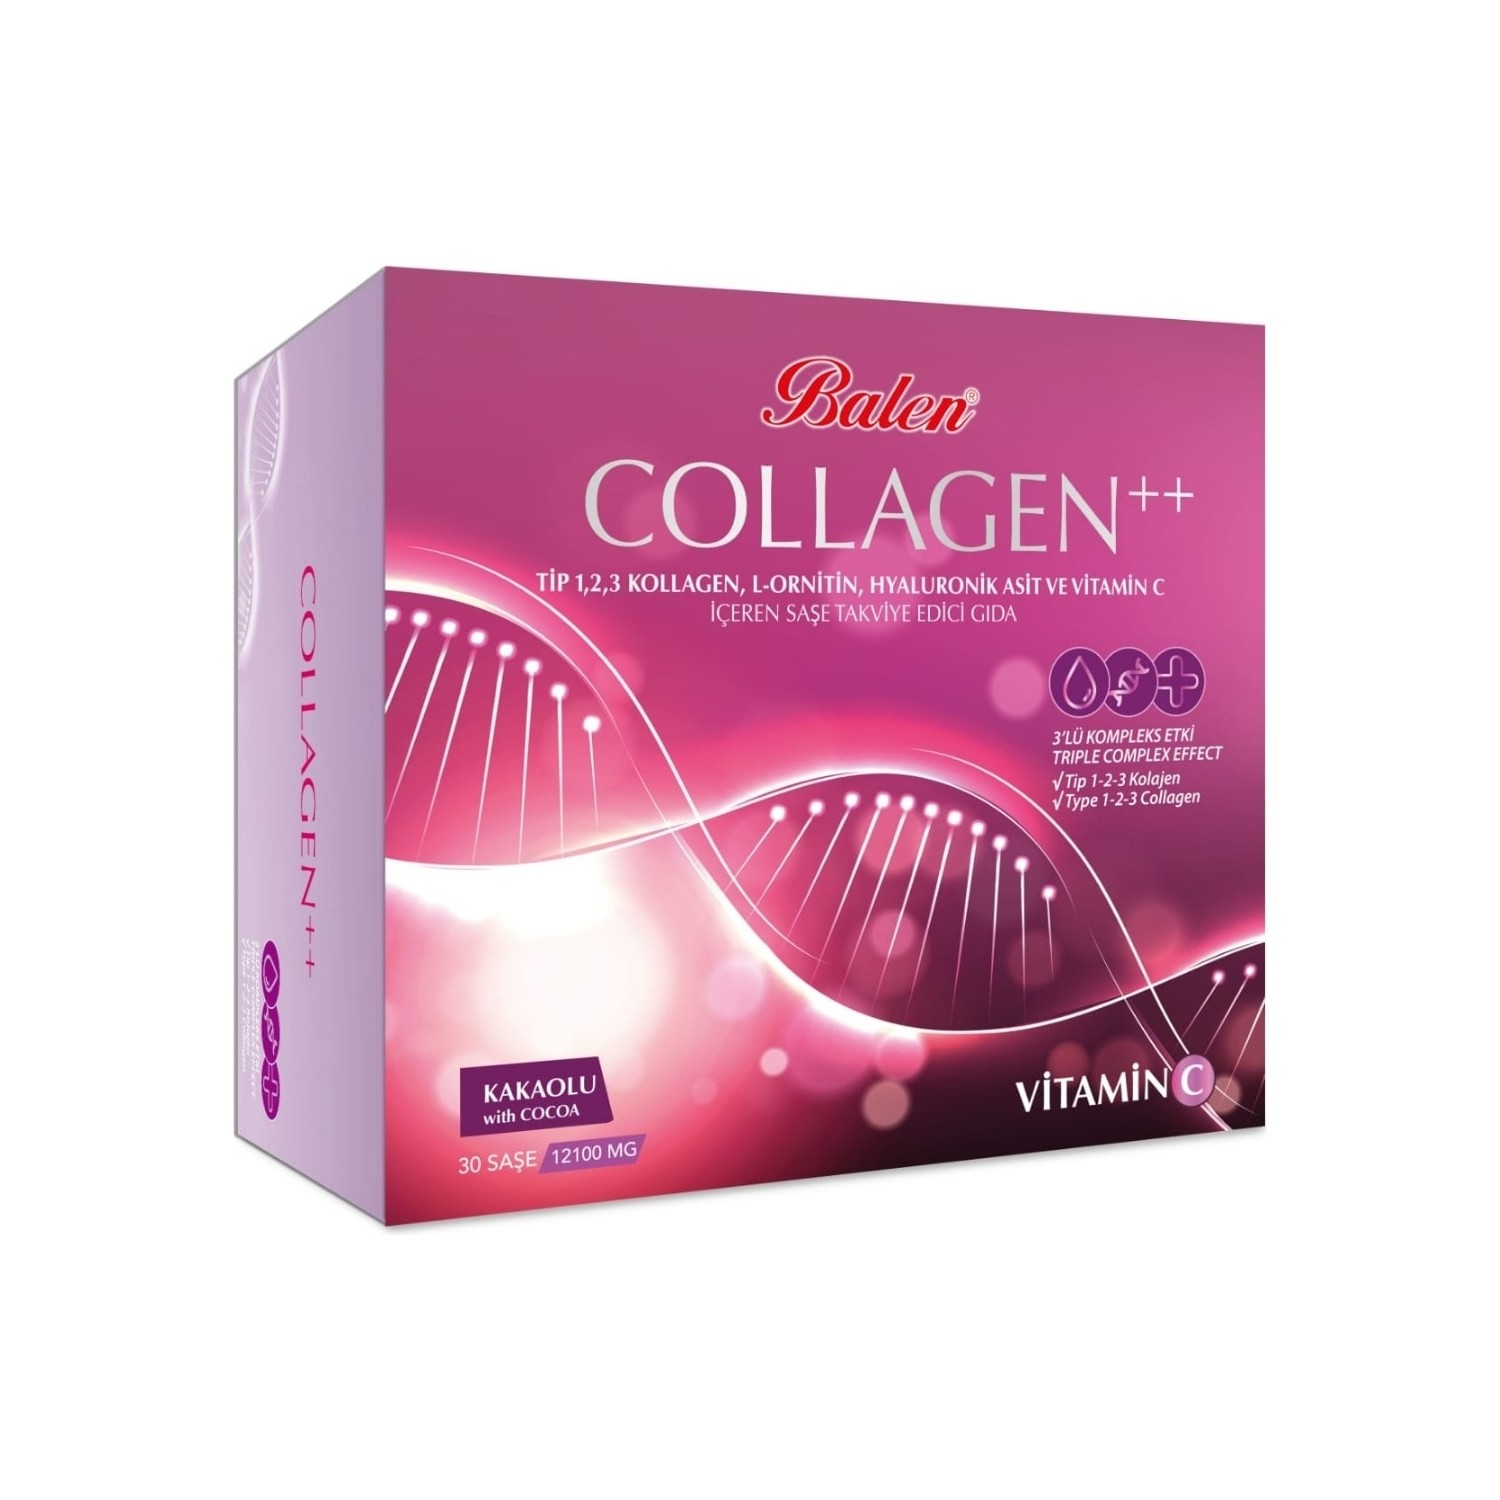 Пищевая добавка Balen Collagen 12100 мг 30 капсул коллаген pro ag altman 30 пакетиков